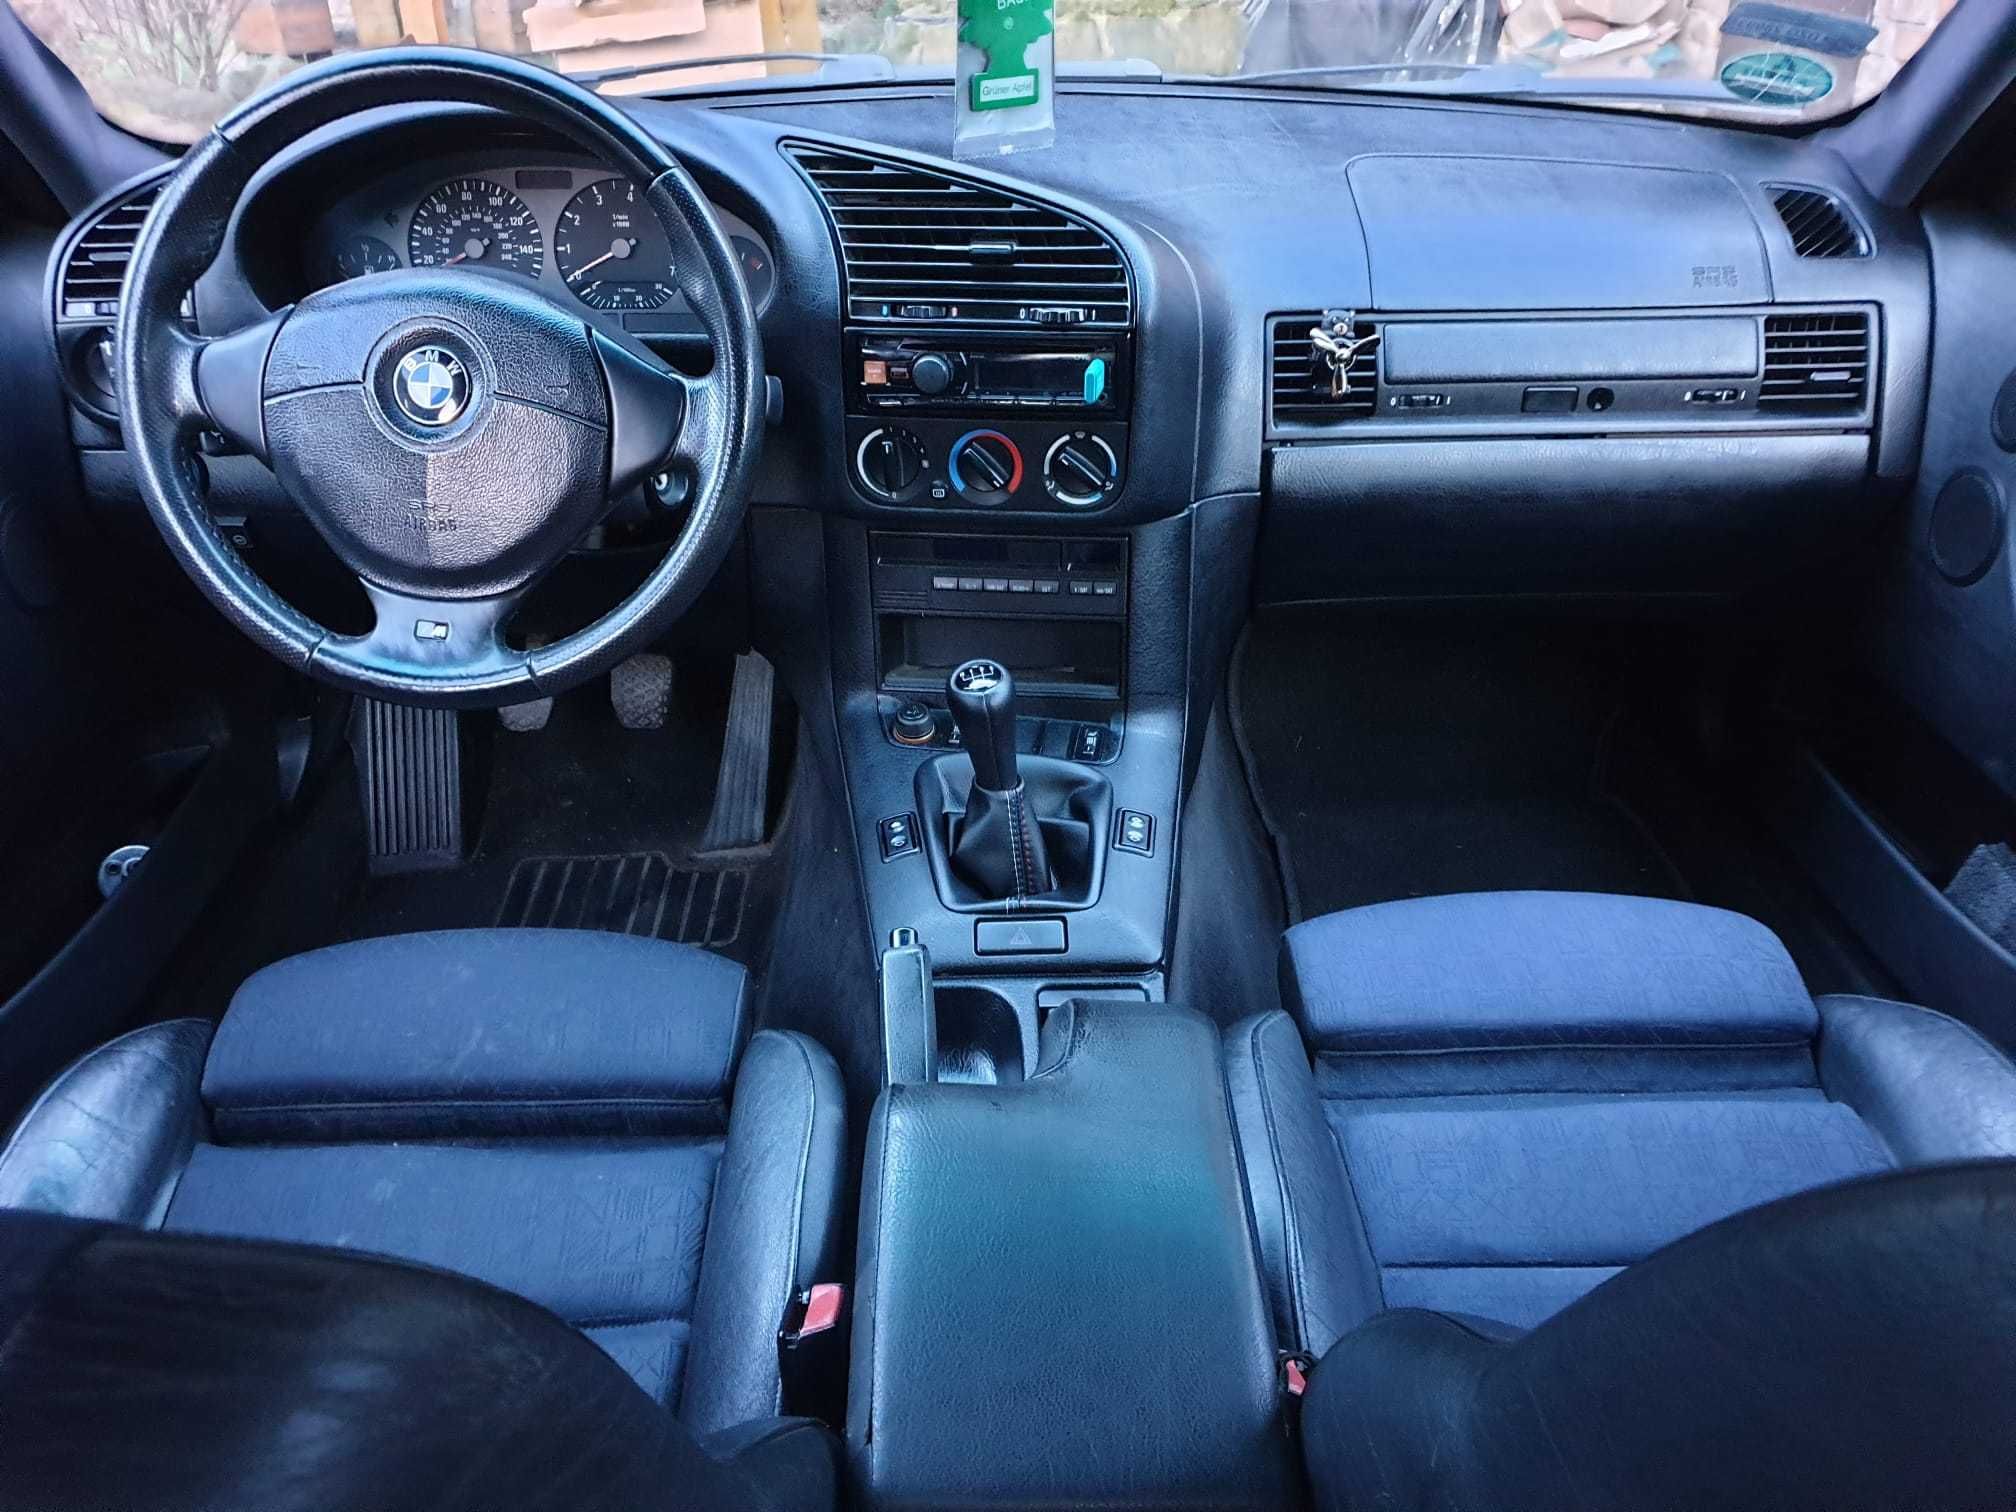 BMW E36 2,8 1996 r. M52B28 + LPG /  ew Zamiana